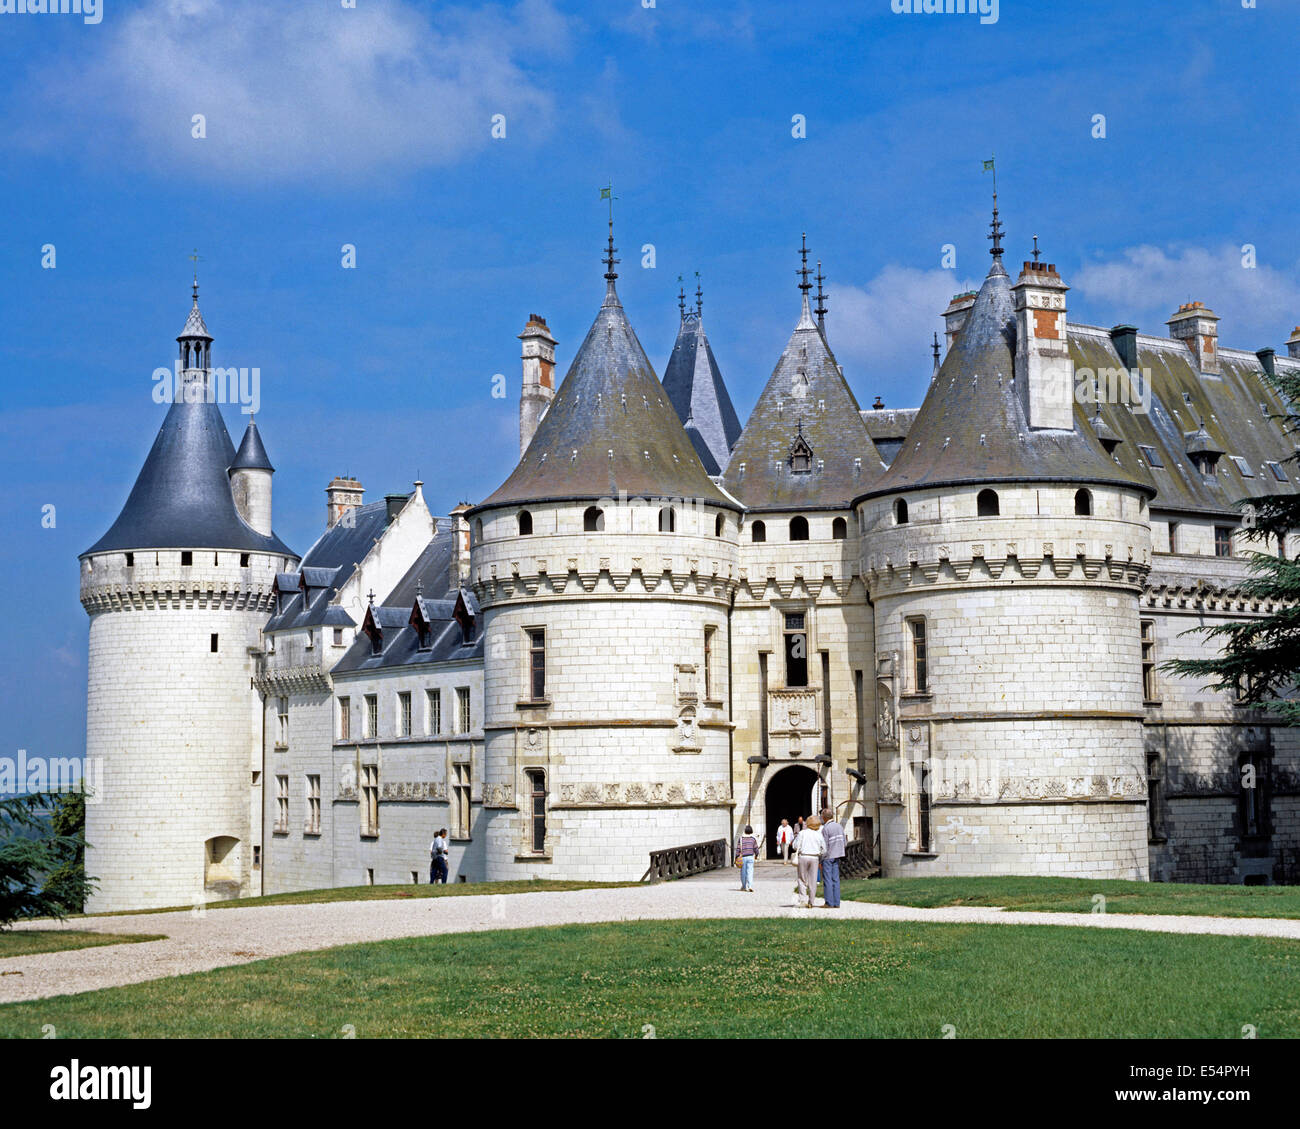 The Chateau de Chaumont, Chaumont-sur-Loire, Loir-et-Cher, France Stock Photo